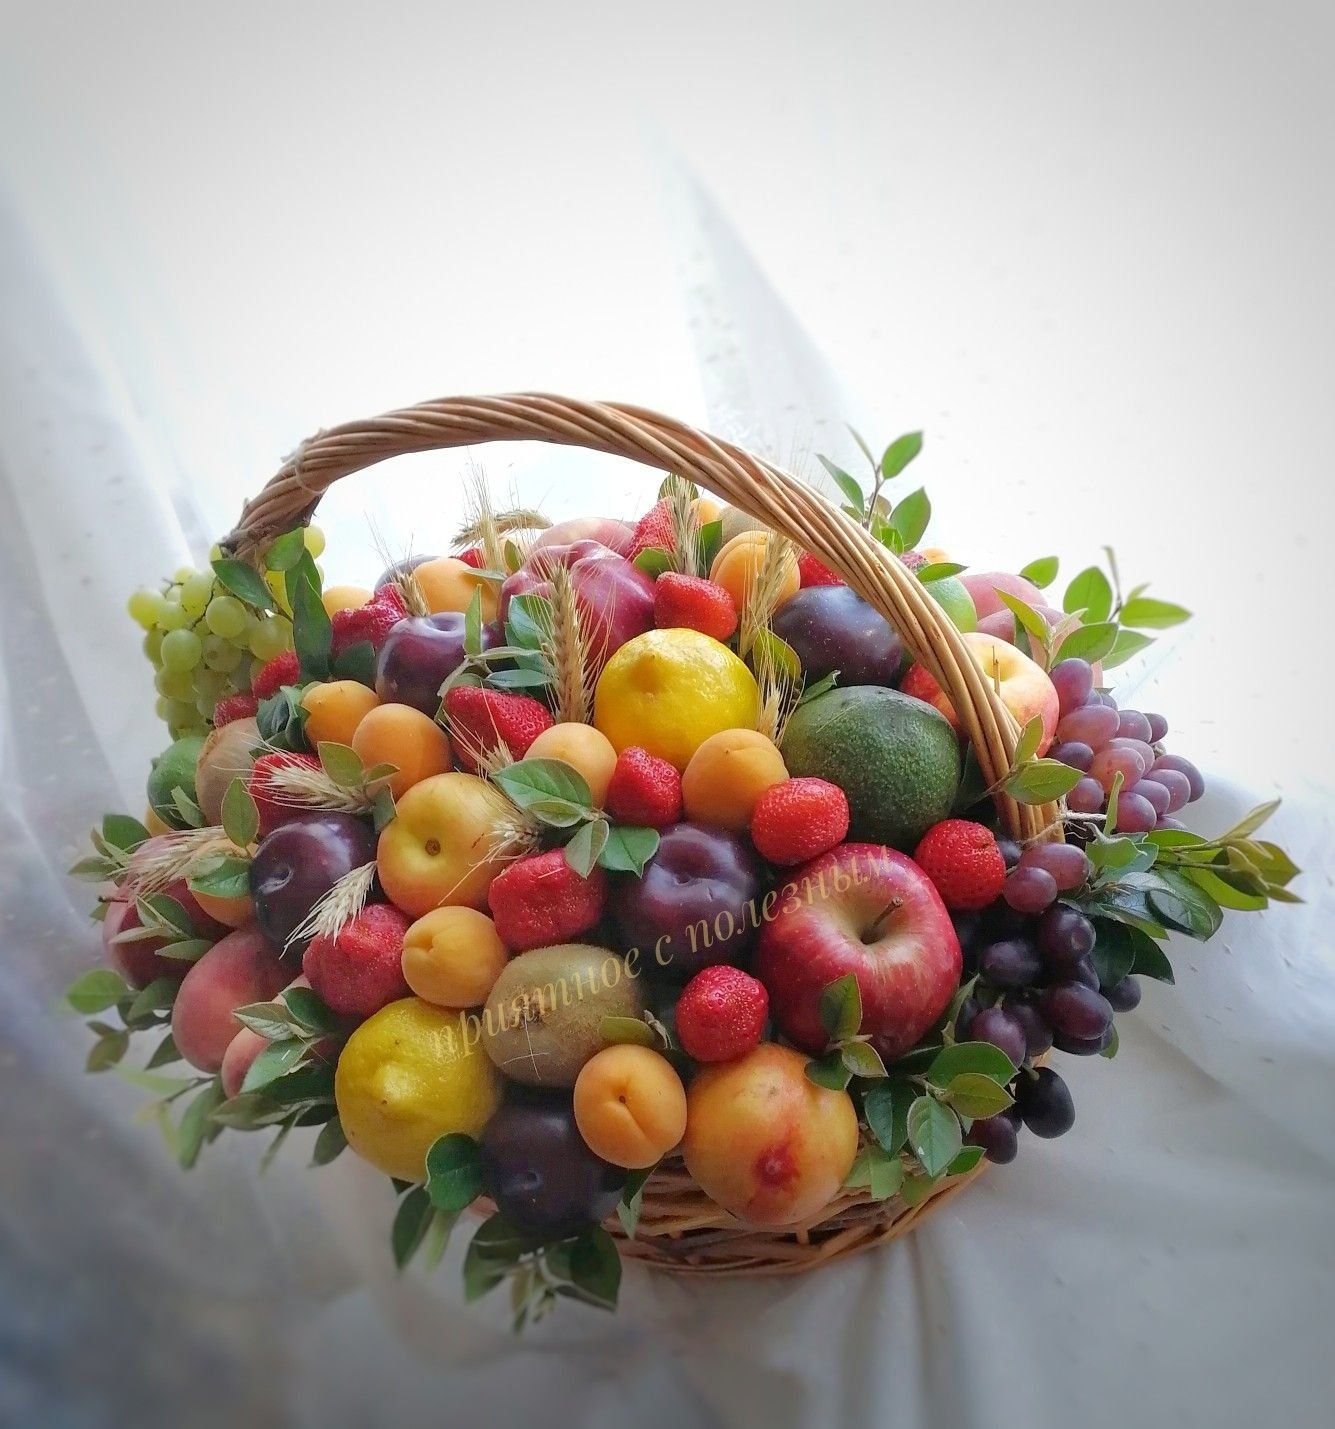 Подарочная корзина с фруктами и орехами в красивой упаковке